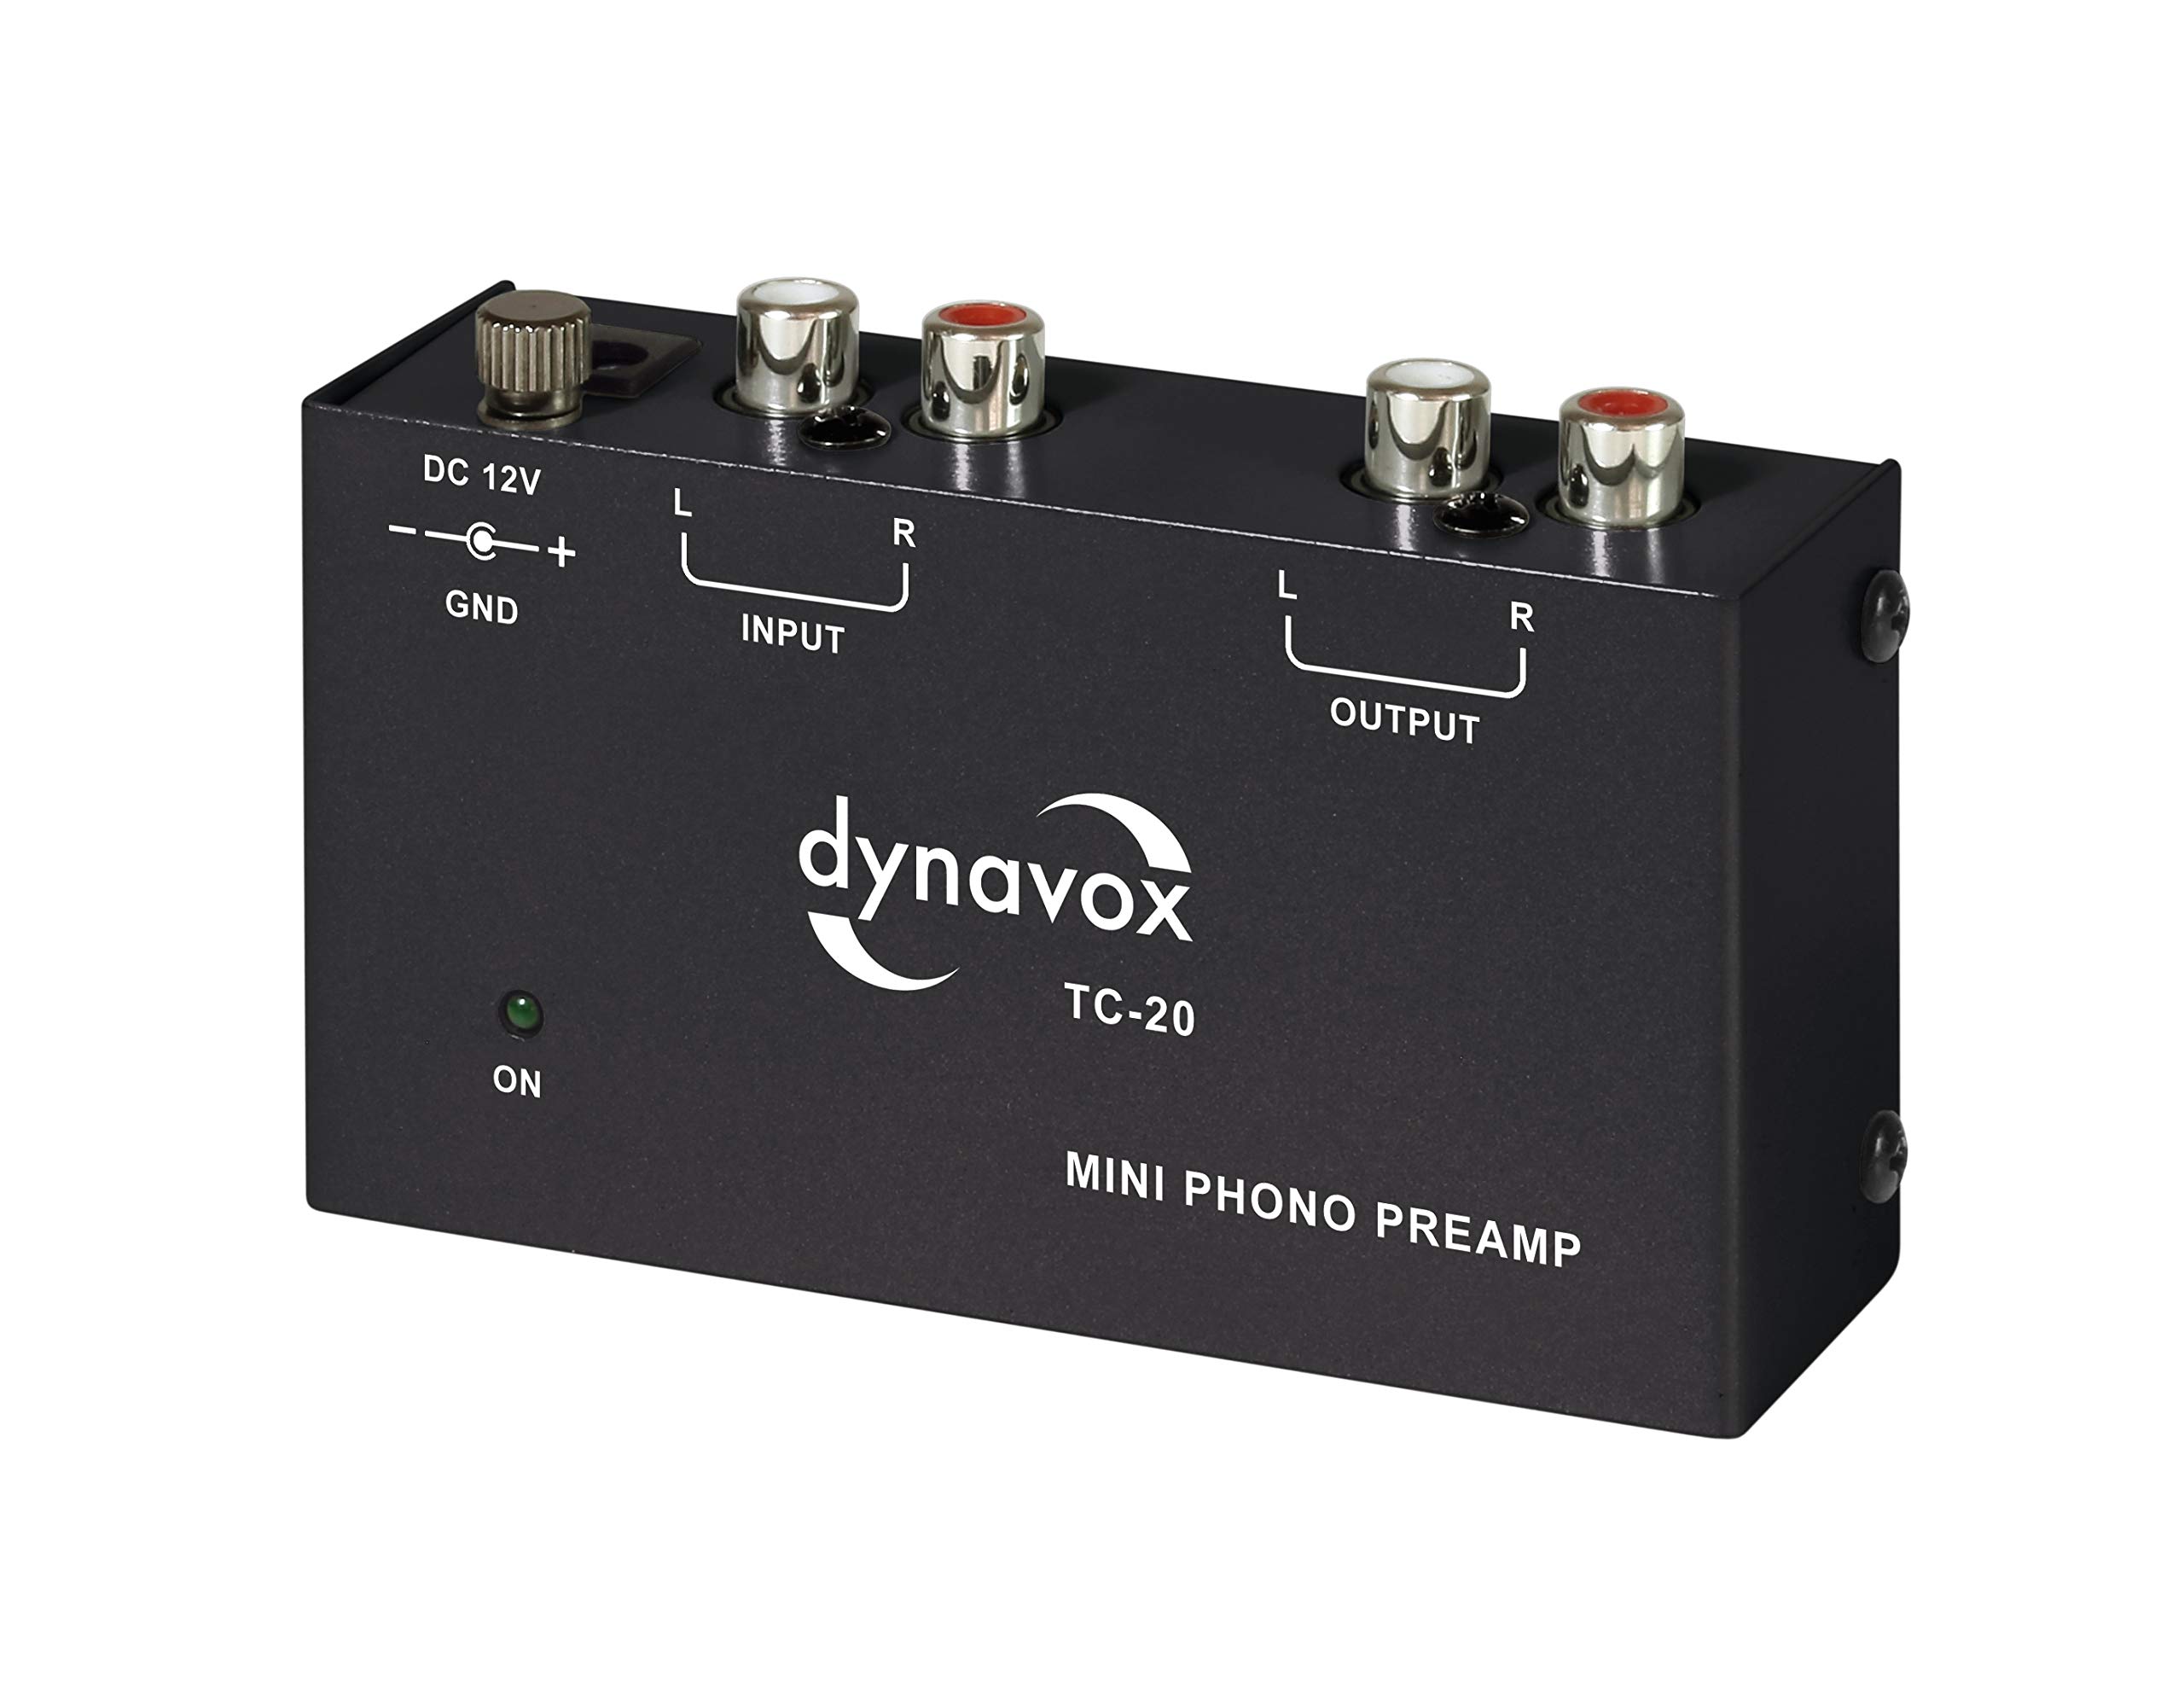 grand choix Pré-amplificateur Dynavox TC-20 (MM), châssis métallique Compact, pour Platine Disque, Coloris Noir v5GikXJav en France Online